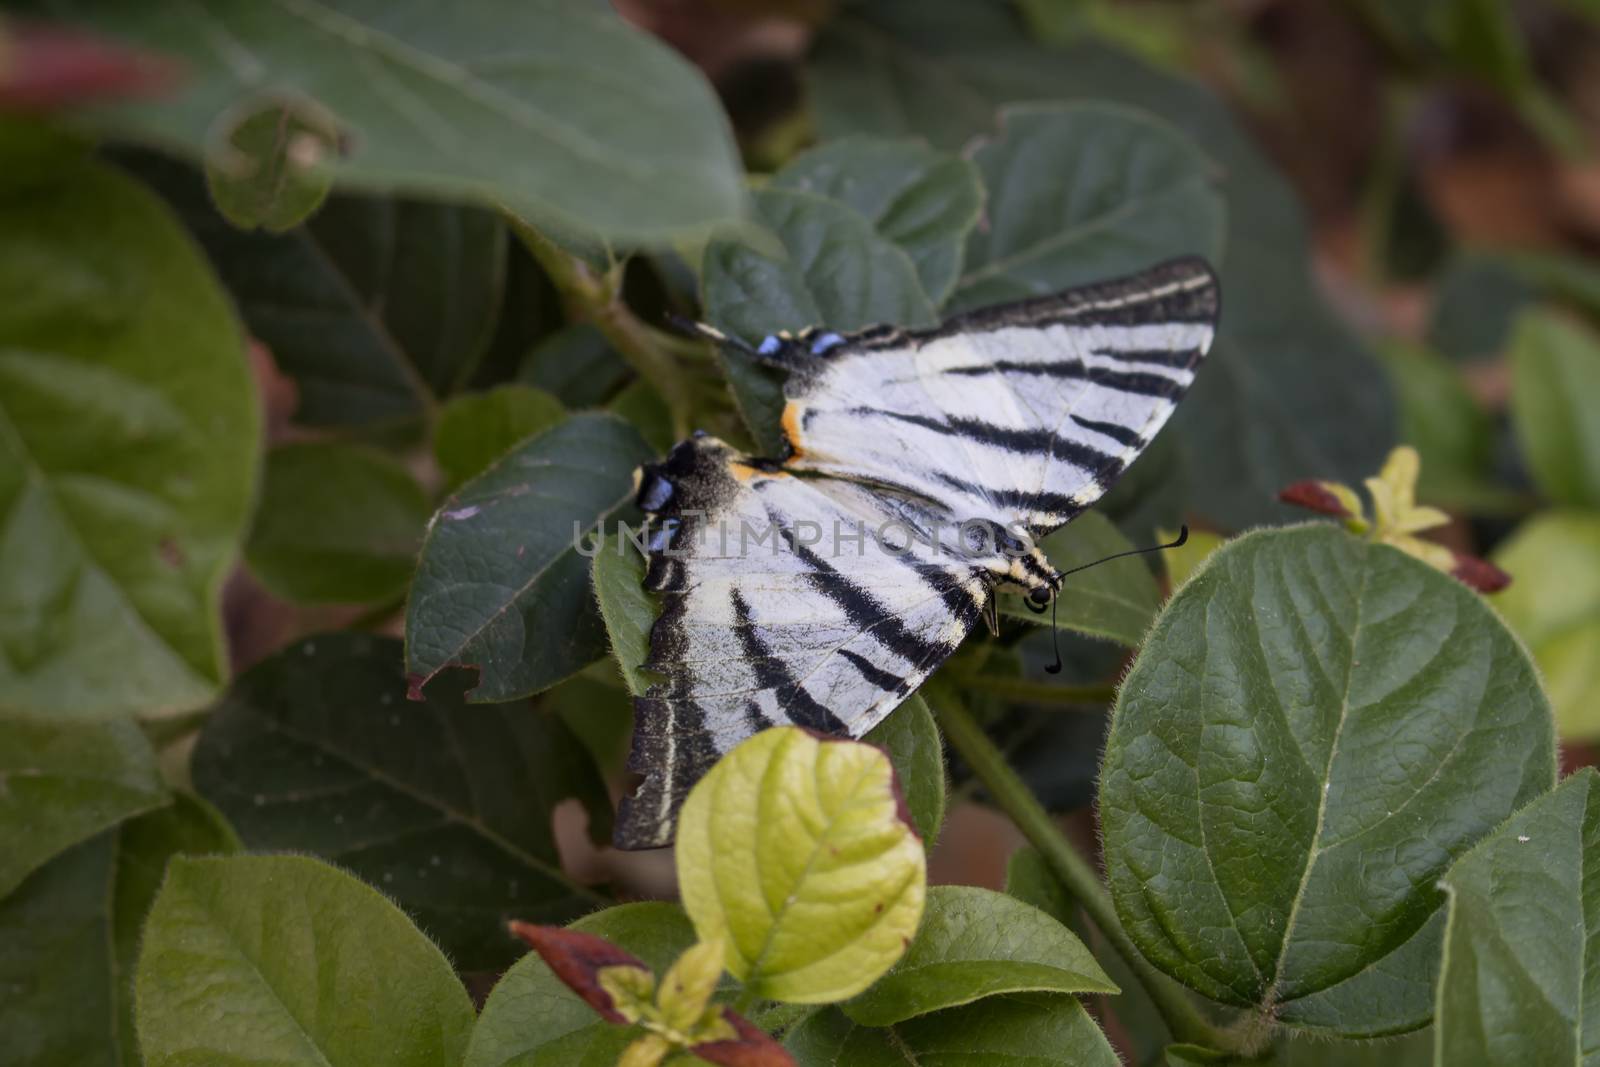 Butterfly on a bush by YassminPhoto